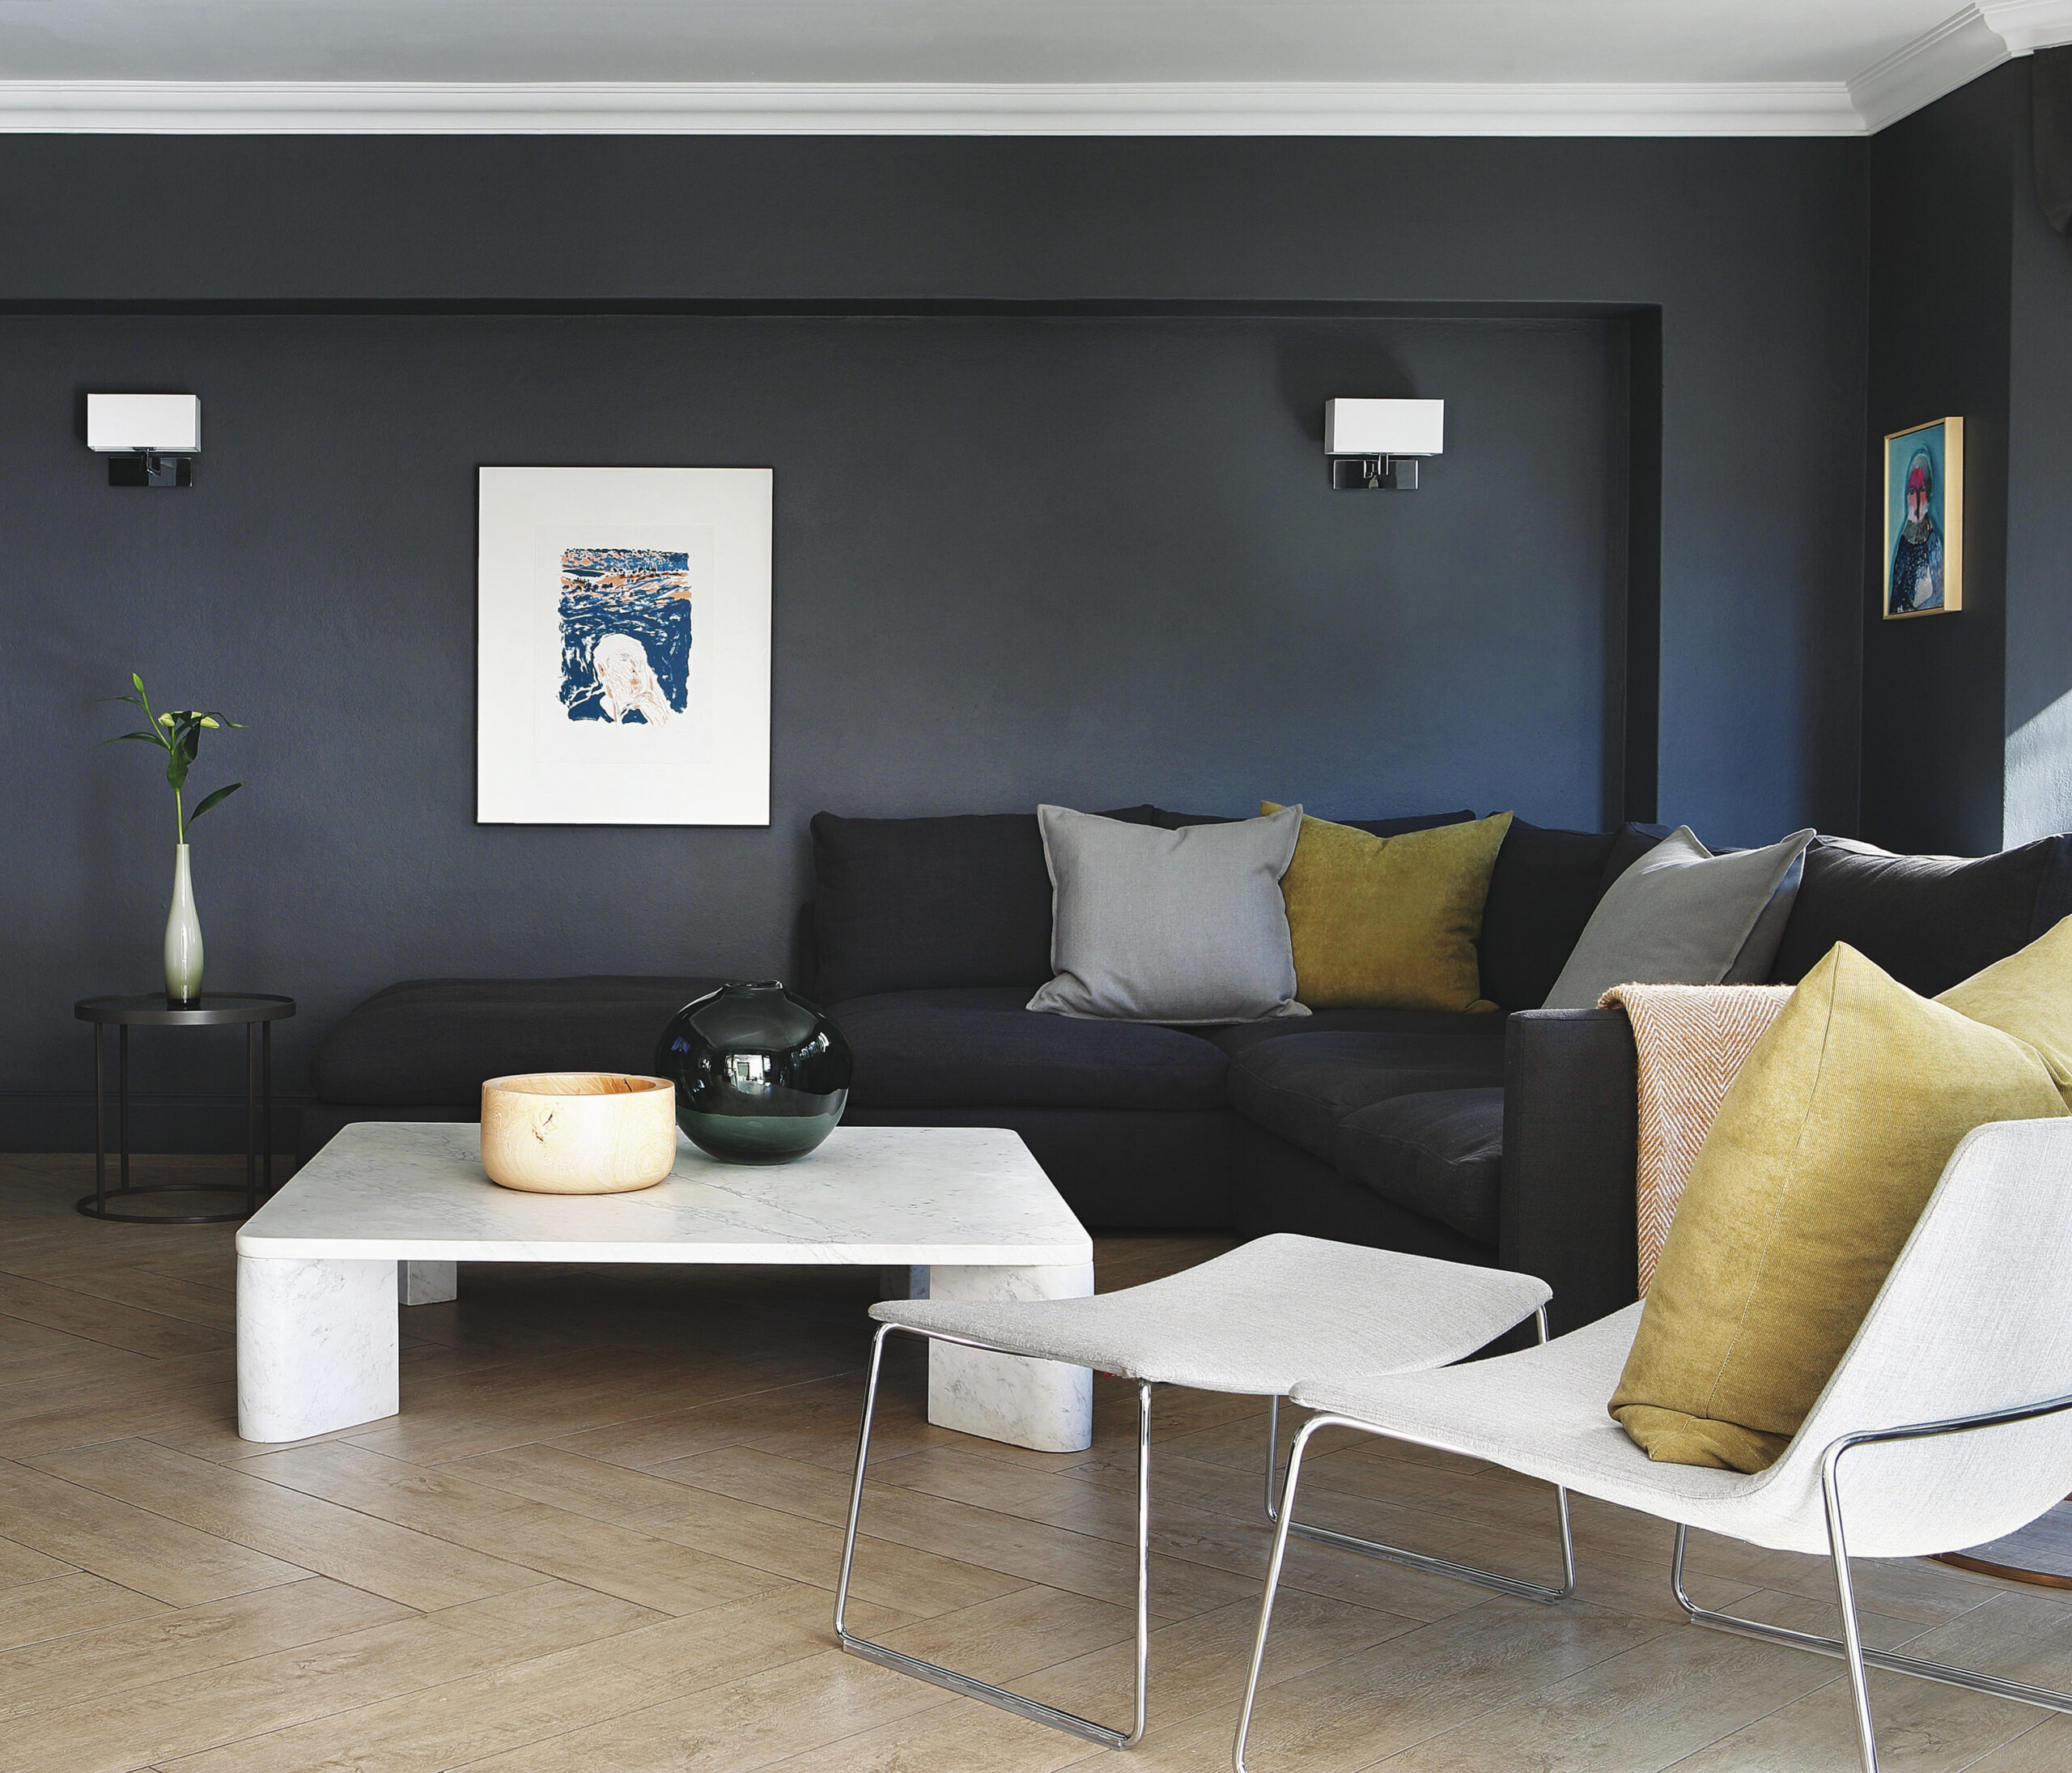 Trendfarben Fürs Wohnzimmer: So Wirken Die Farben | Obi inside Wohnzimmer Farben Modern